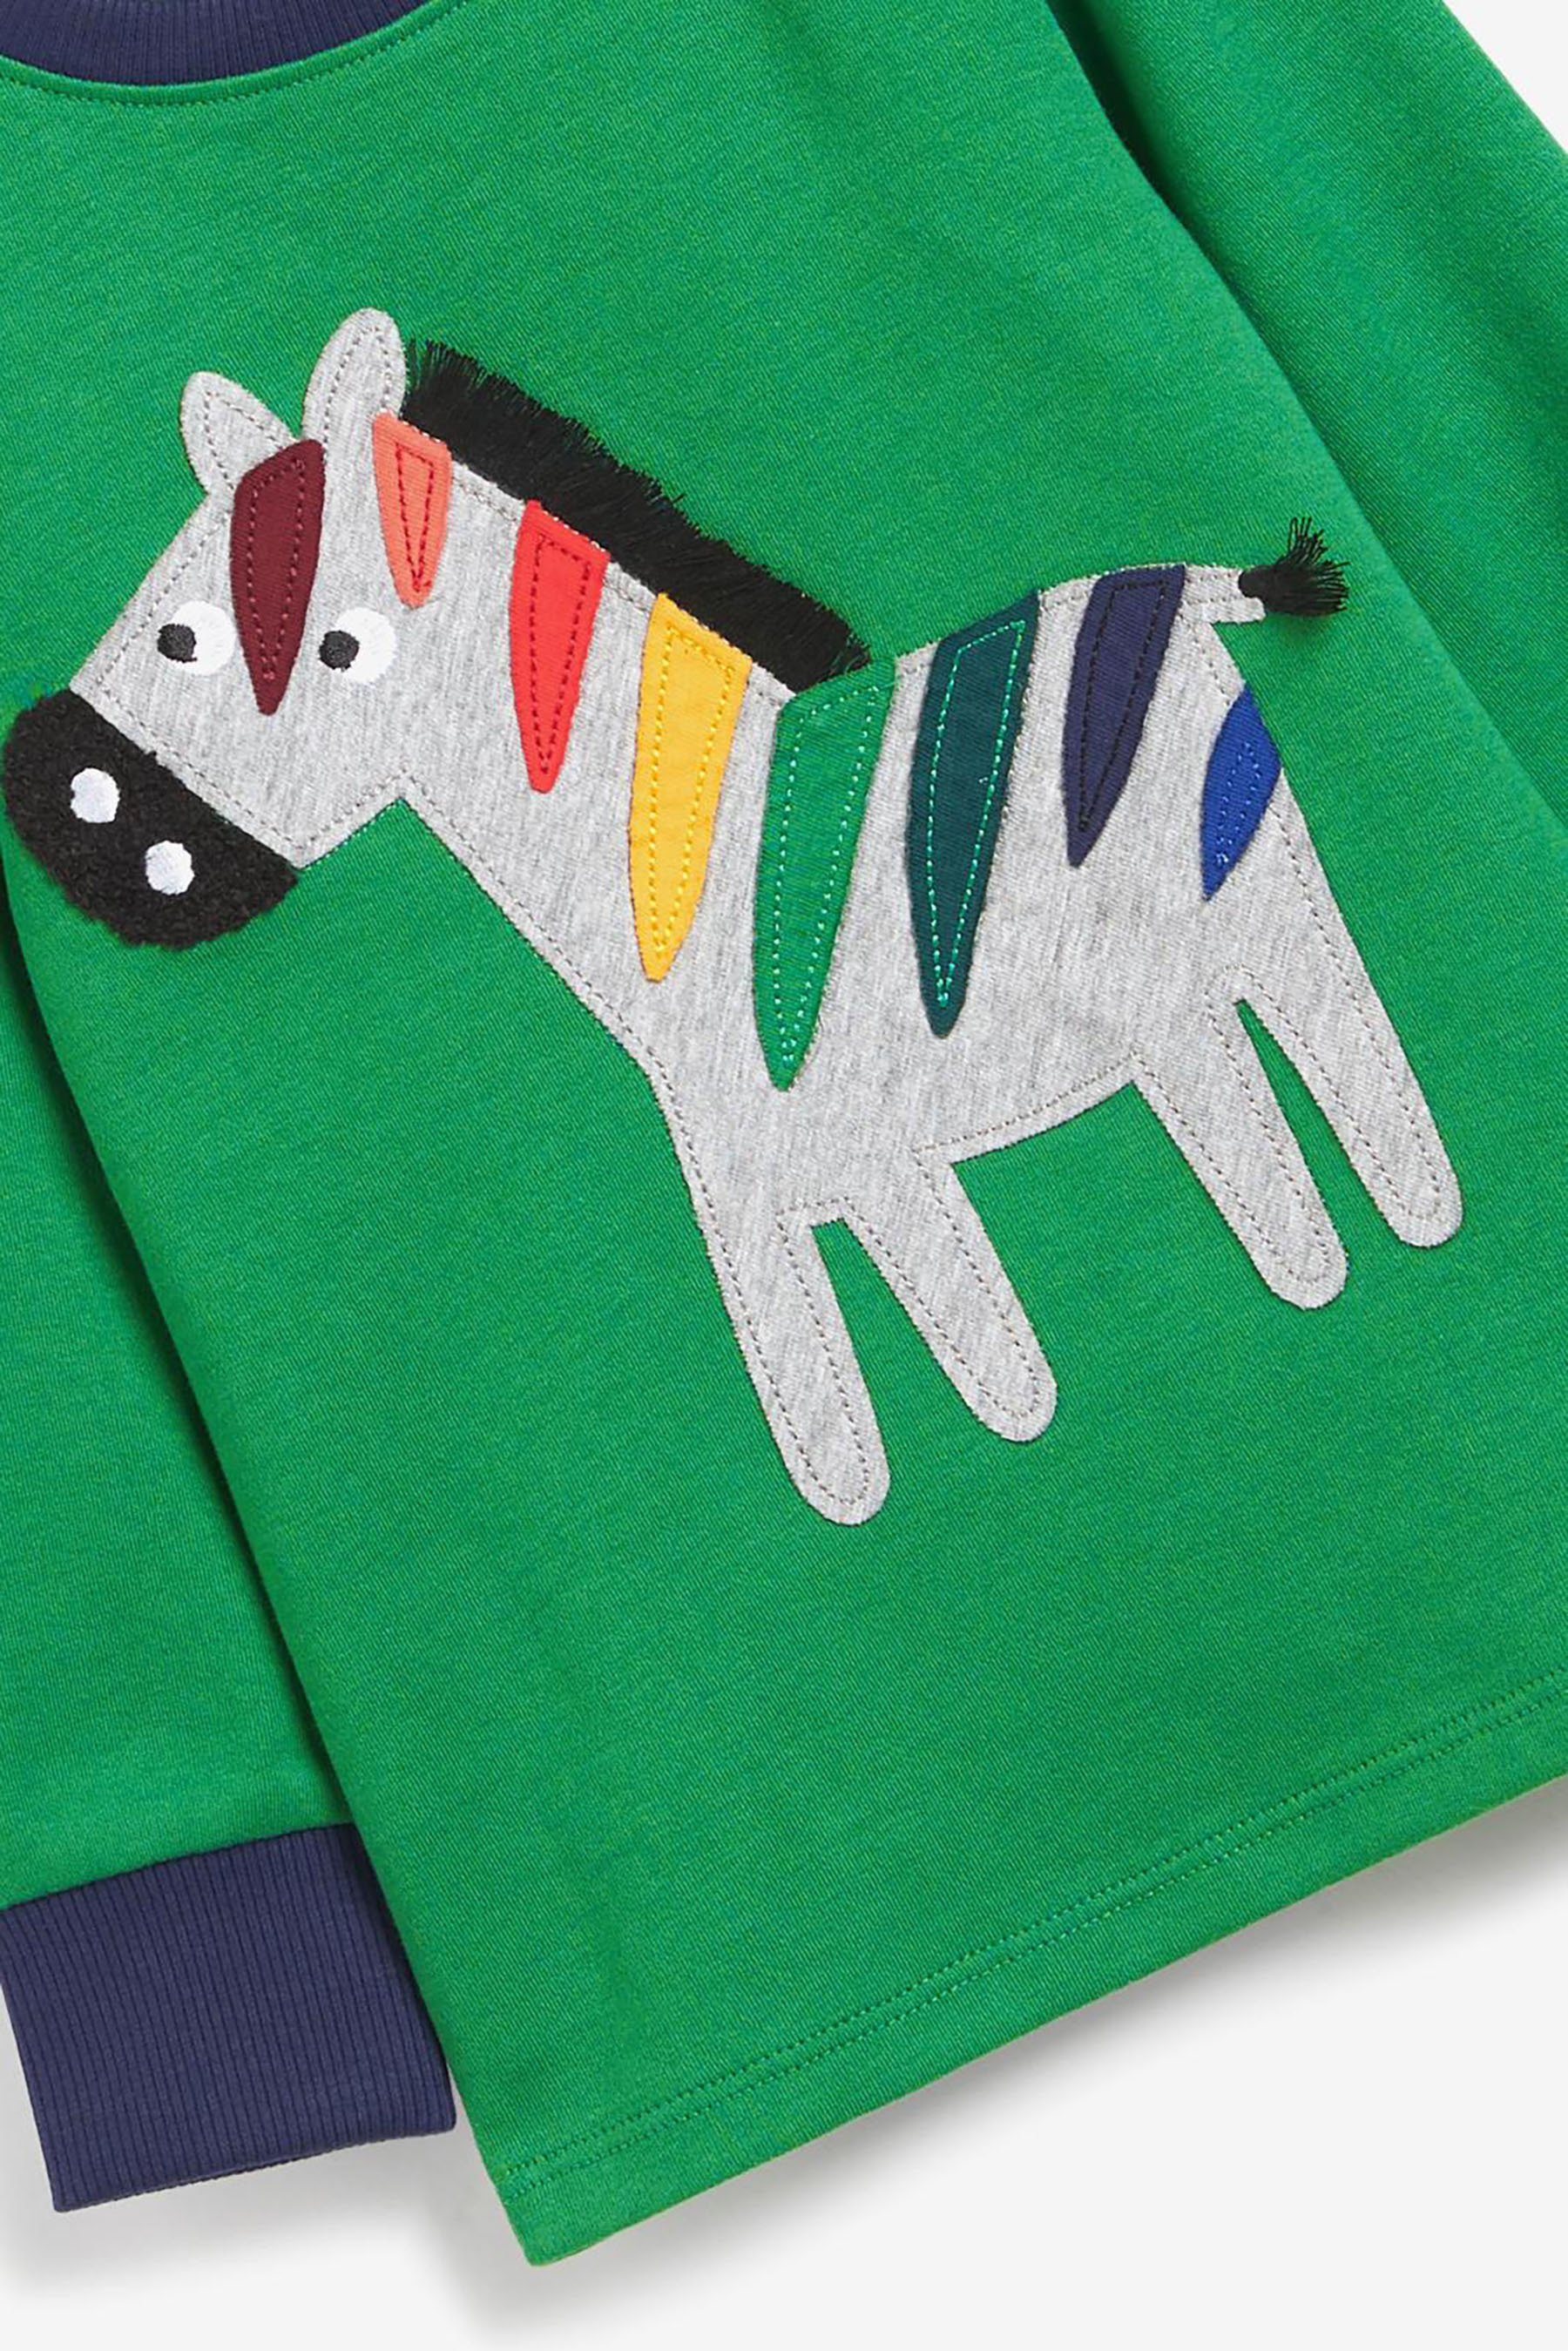 Next Pyjama Kuschelpyjamas, 3er-Pack Blue/Green/Yellow (6 Animals tlg)